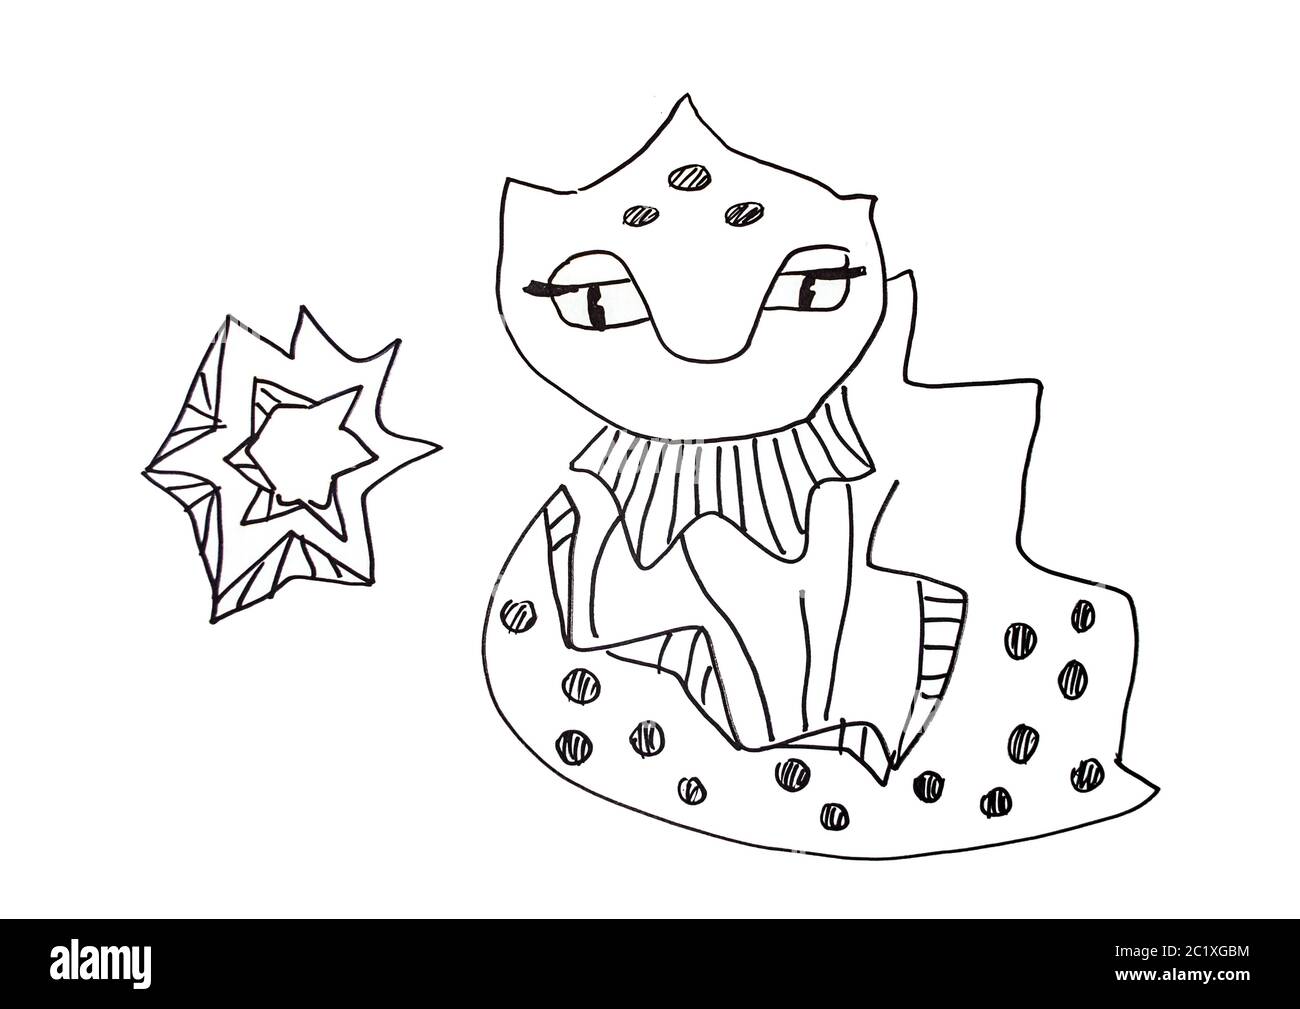 Libelle Dragon avec illustration en étoile. Dessin graphique à lignes noires sur fond blanc. Banque D'Images